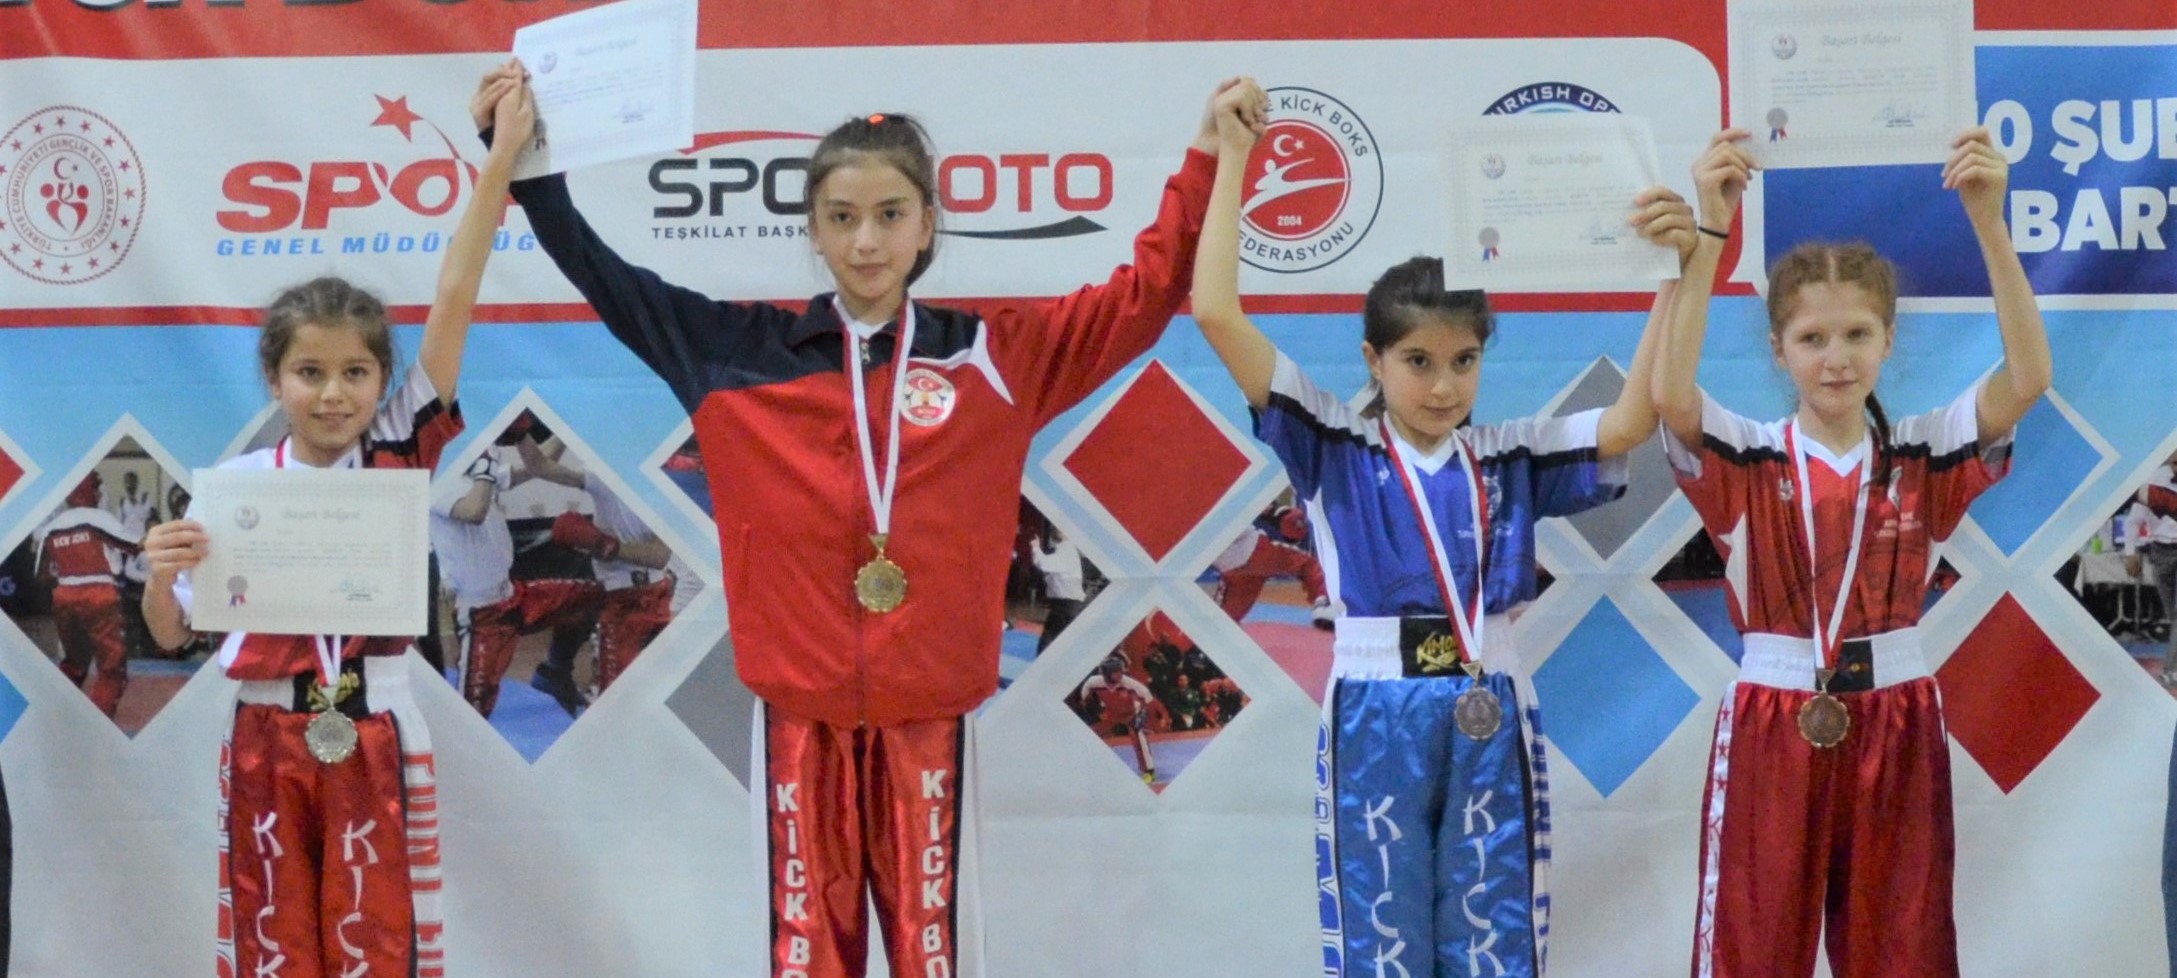 Türkiye Okullar Gençler Kick Boks Şampiyonası (Sivas) Online Kayıtları Başlamıştır